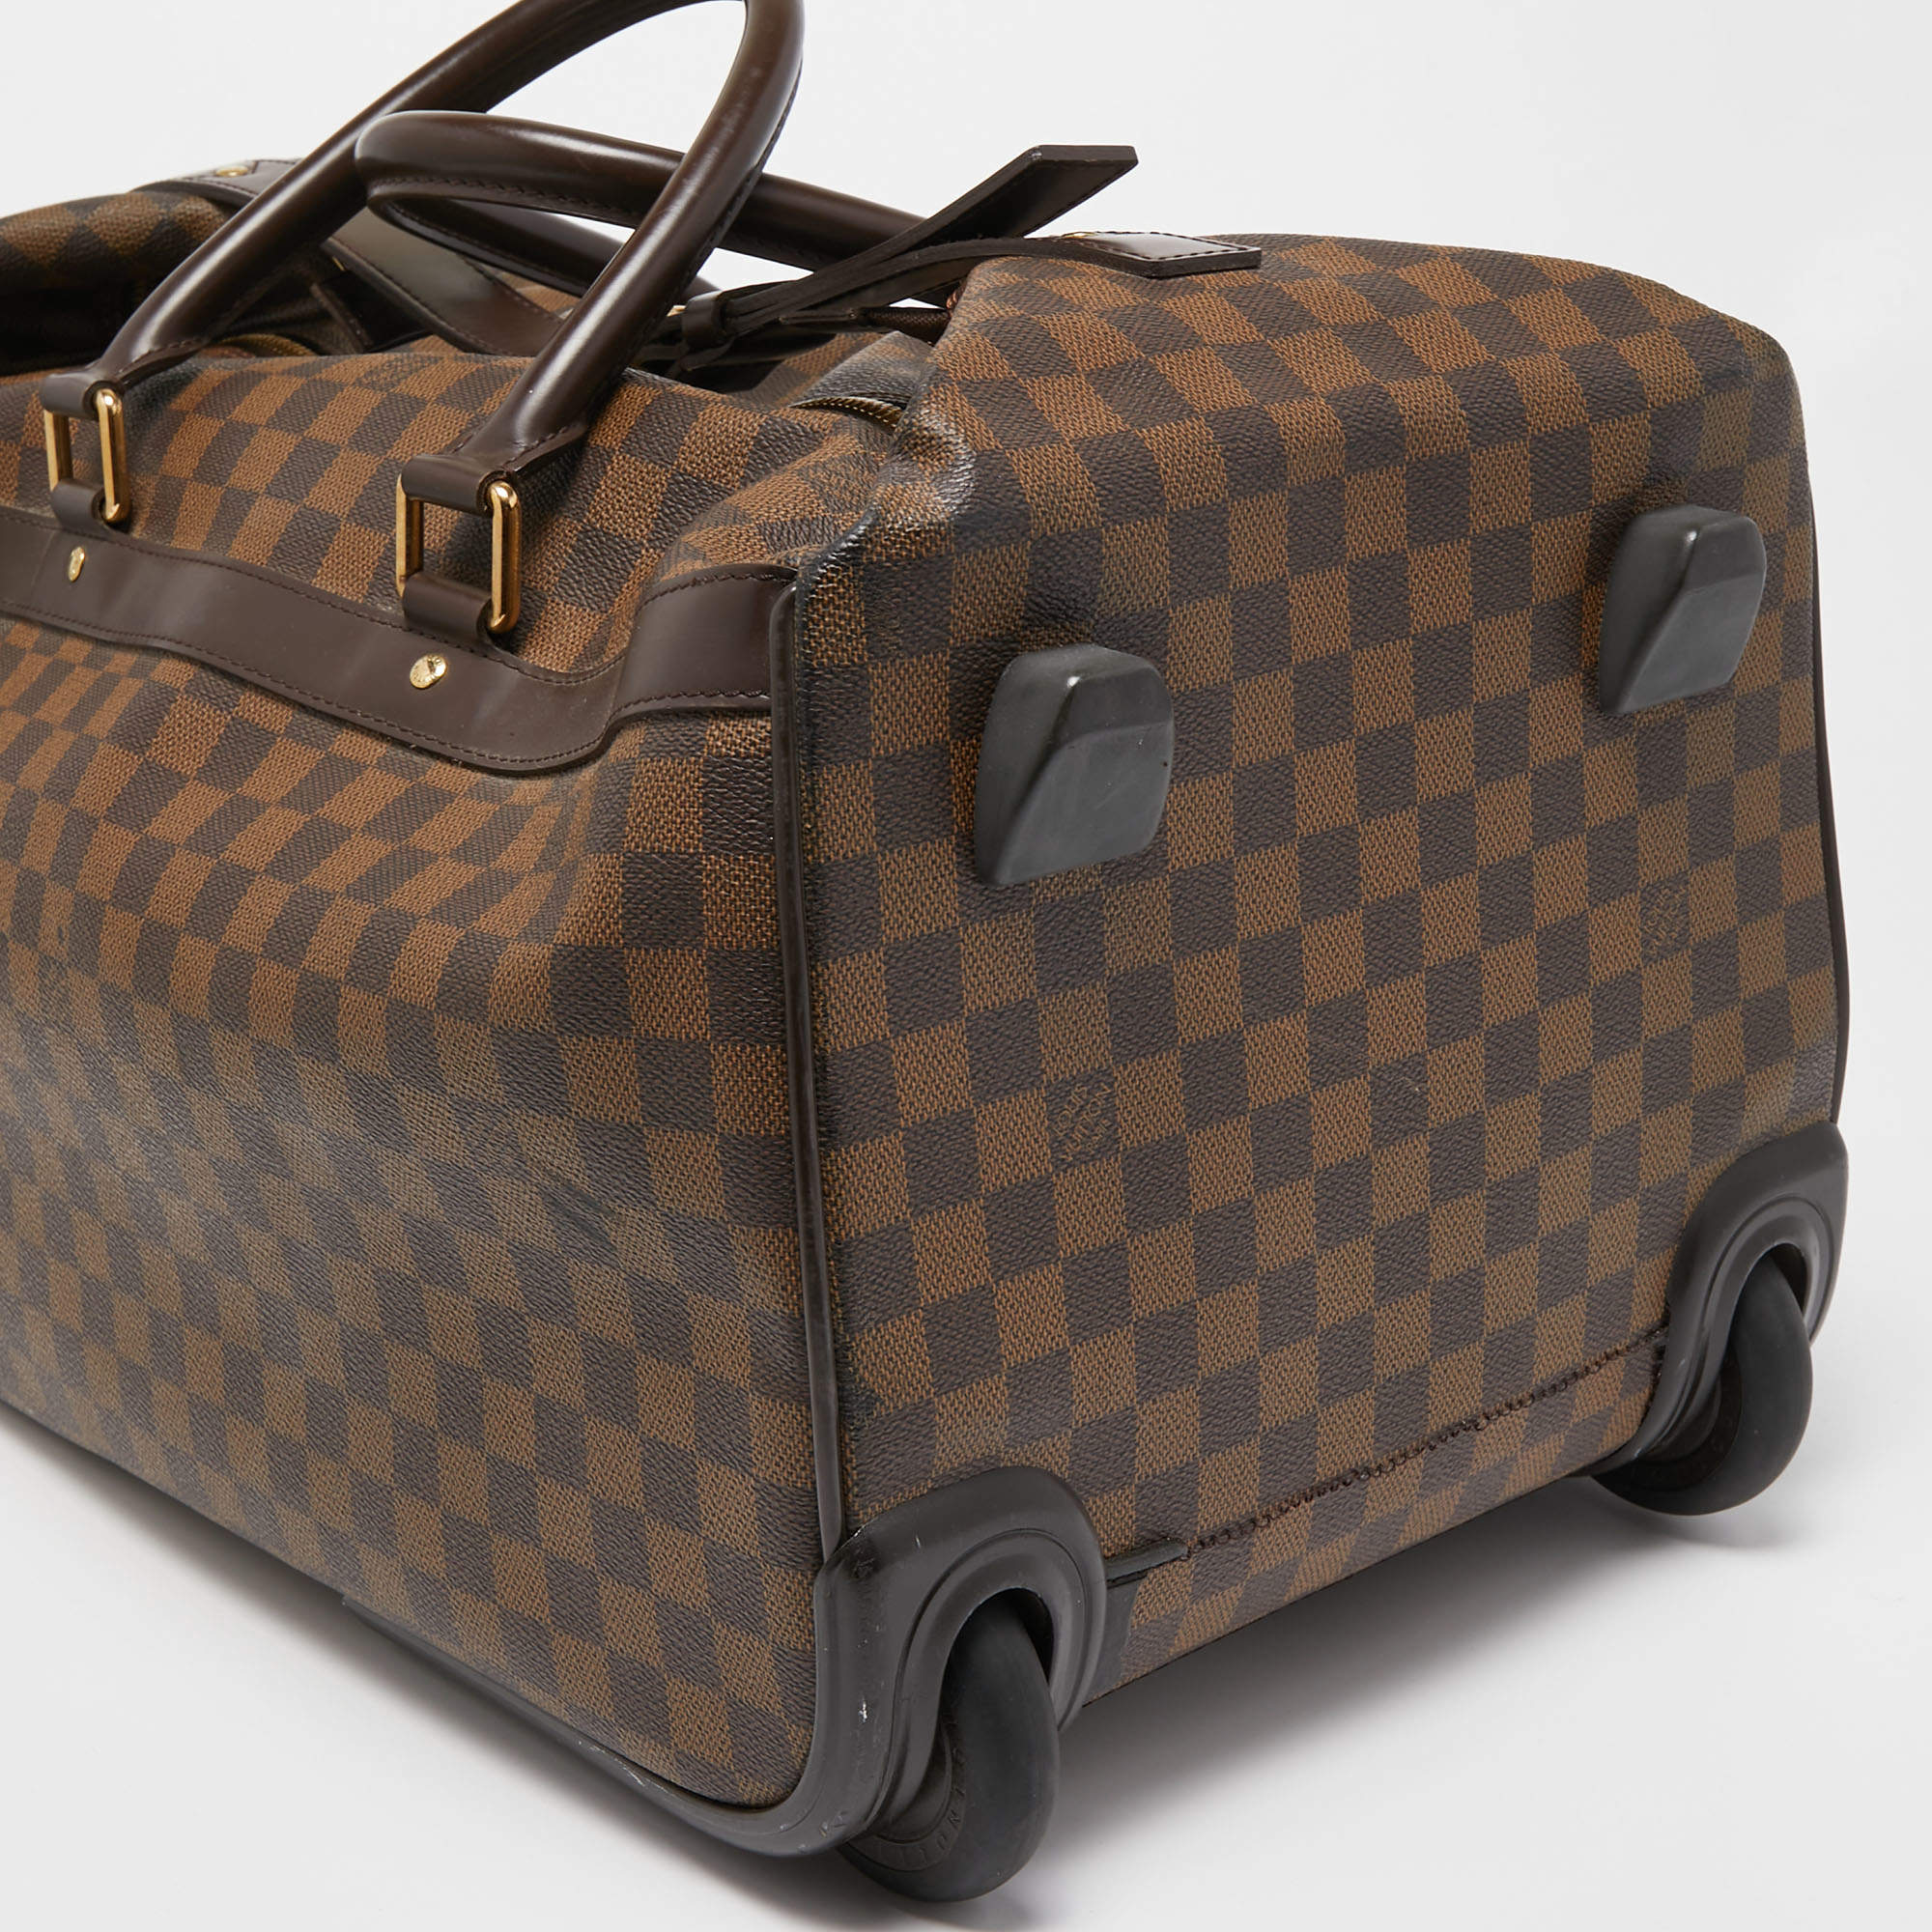 L*V Damier Ebene Eole 50 Rolling Luggage (Indistinguishable) – ZAK BAGS ©️